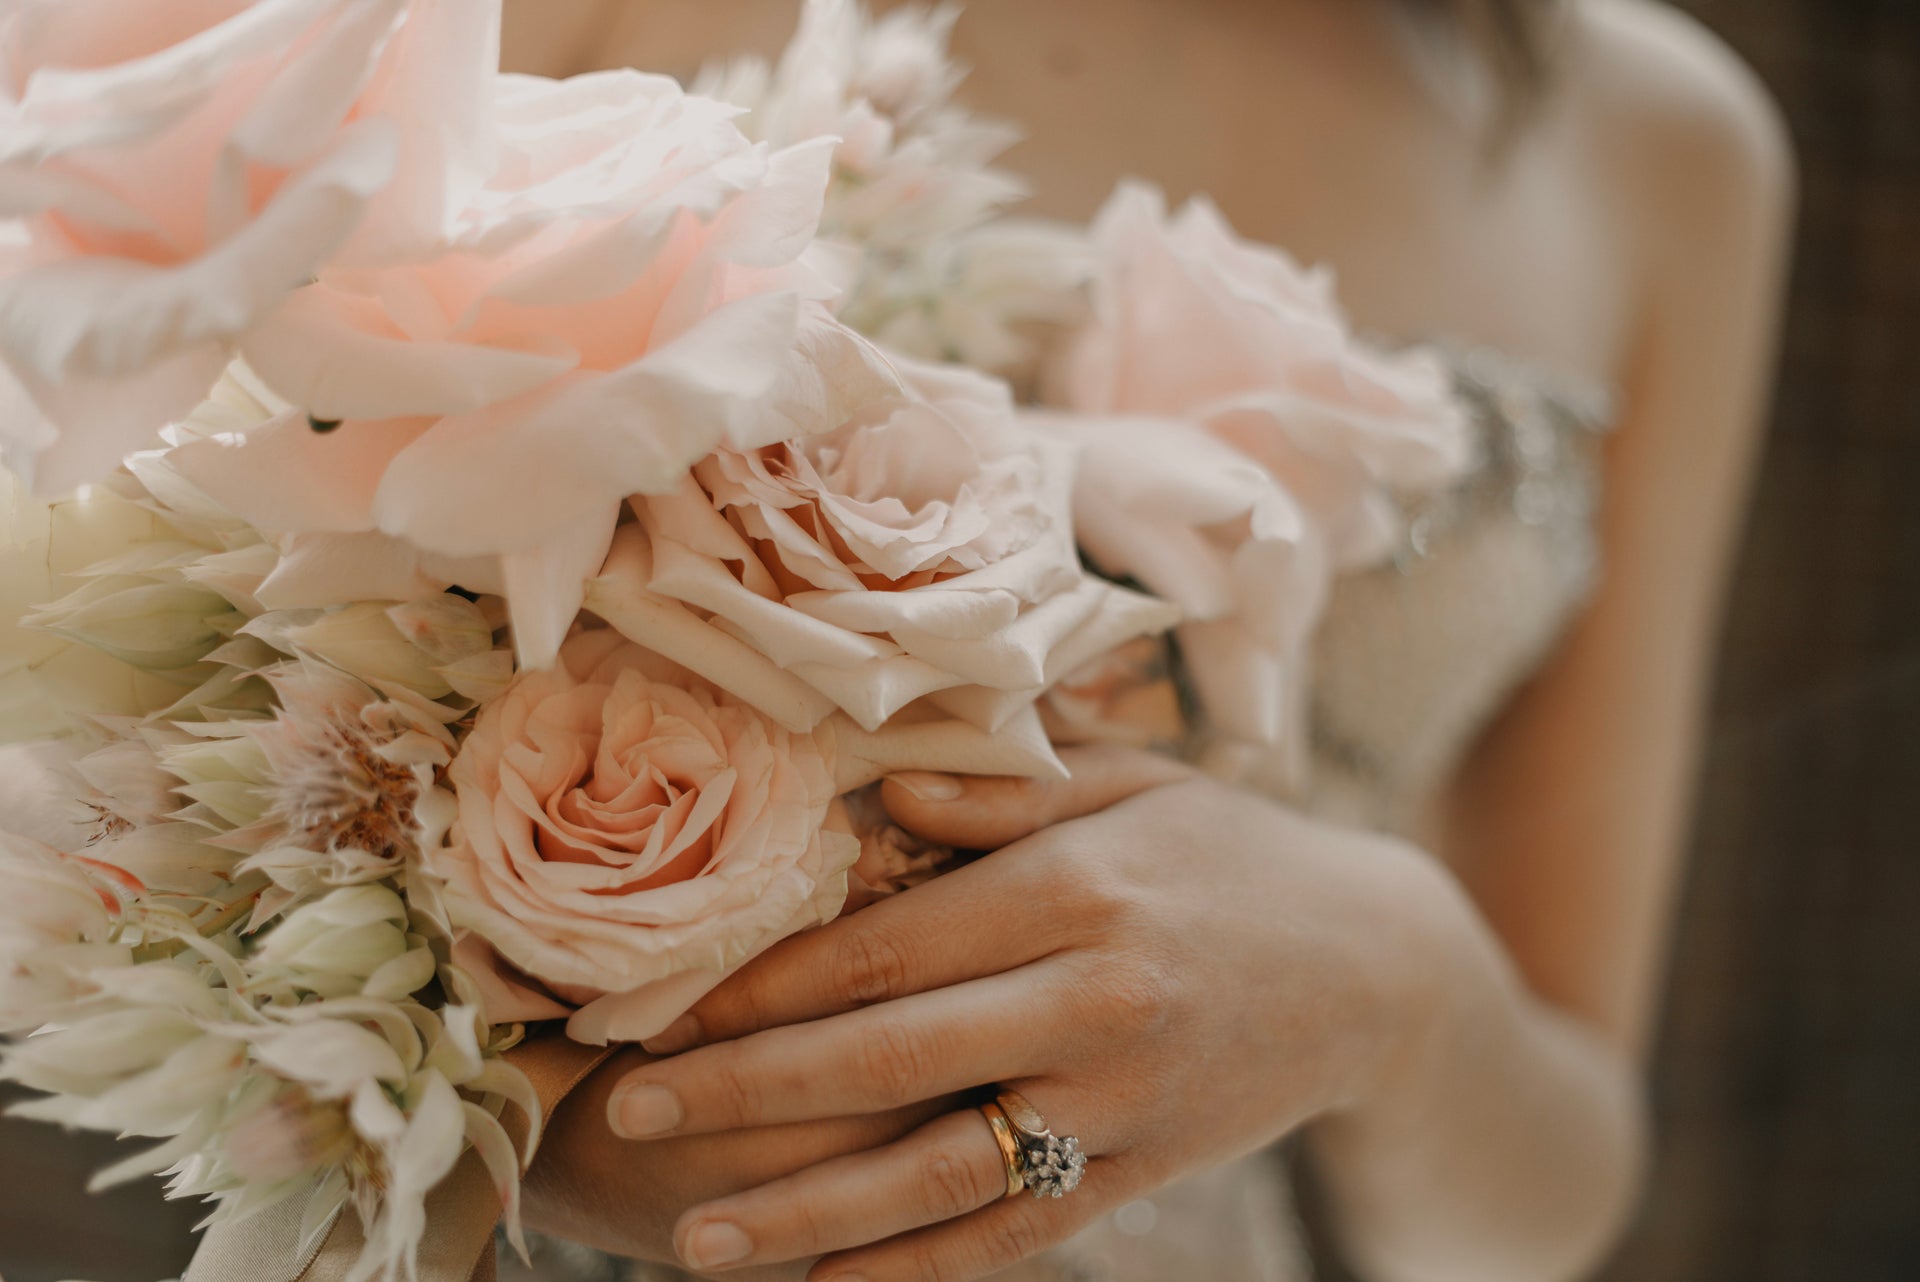 Load video: Memories by Coastal Wedding Flowers | Heidi Labram